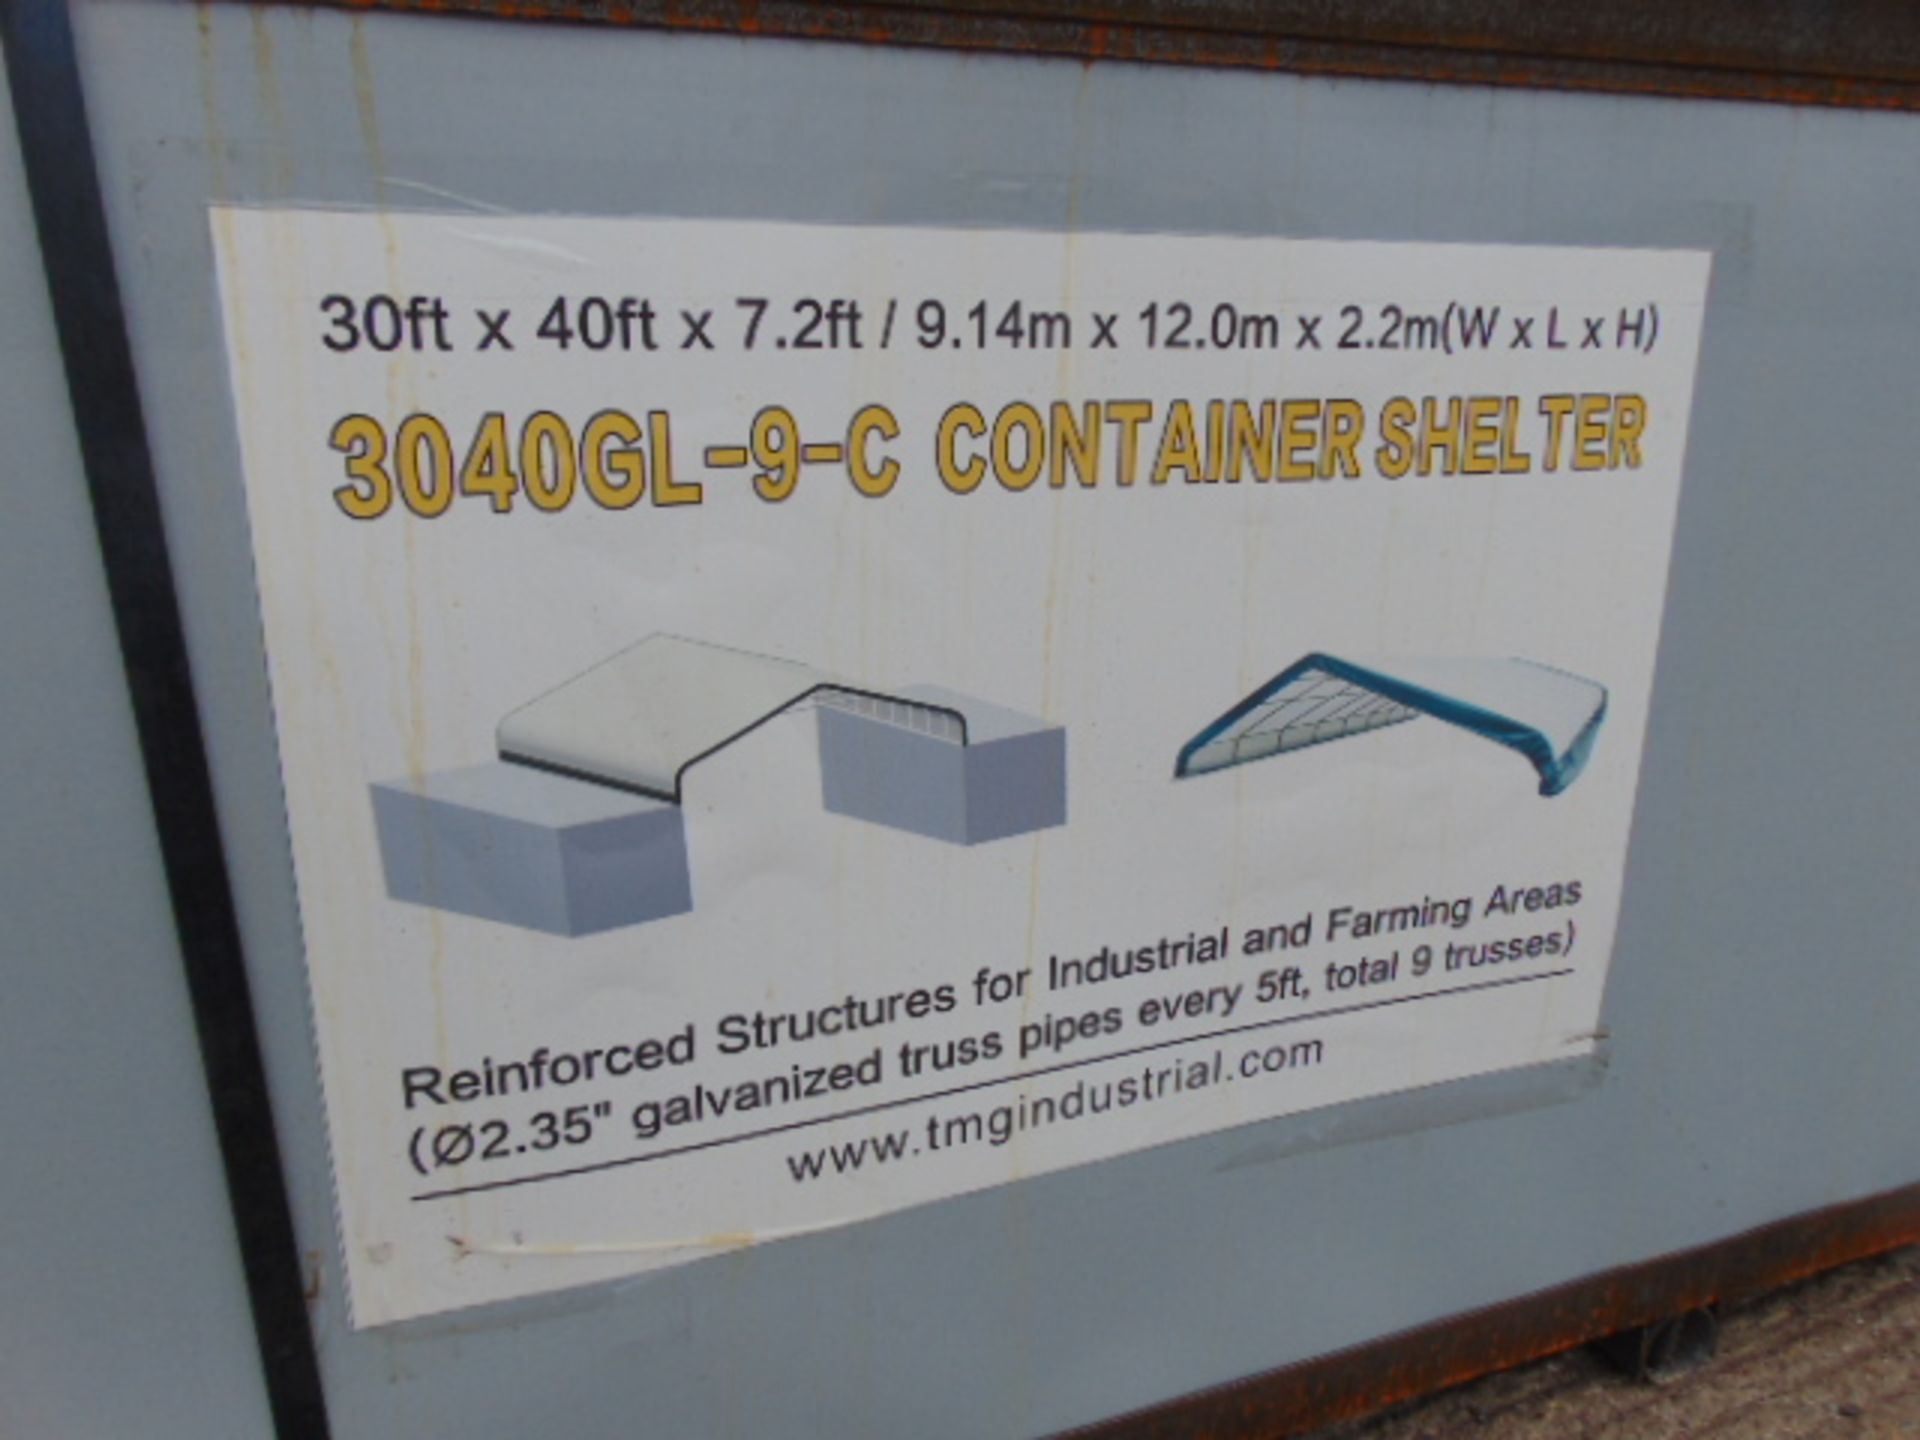 Container Shelter 30'W x 40'L x 7.2' H P/No 3040GL-9-C - Image 2 of 7